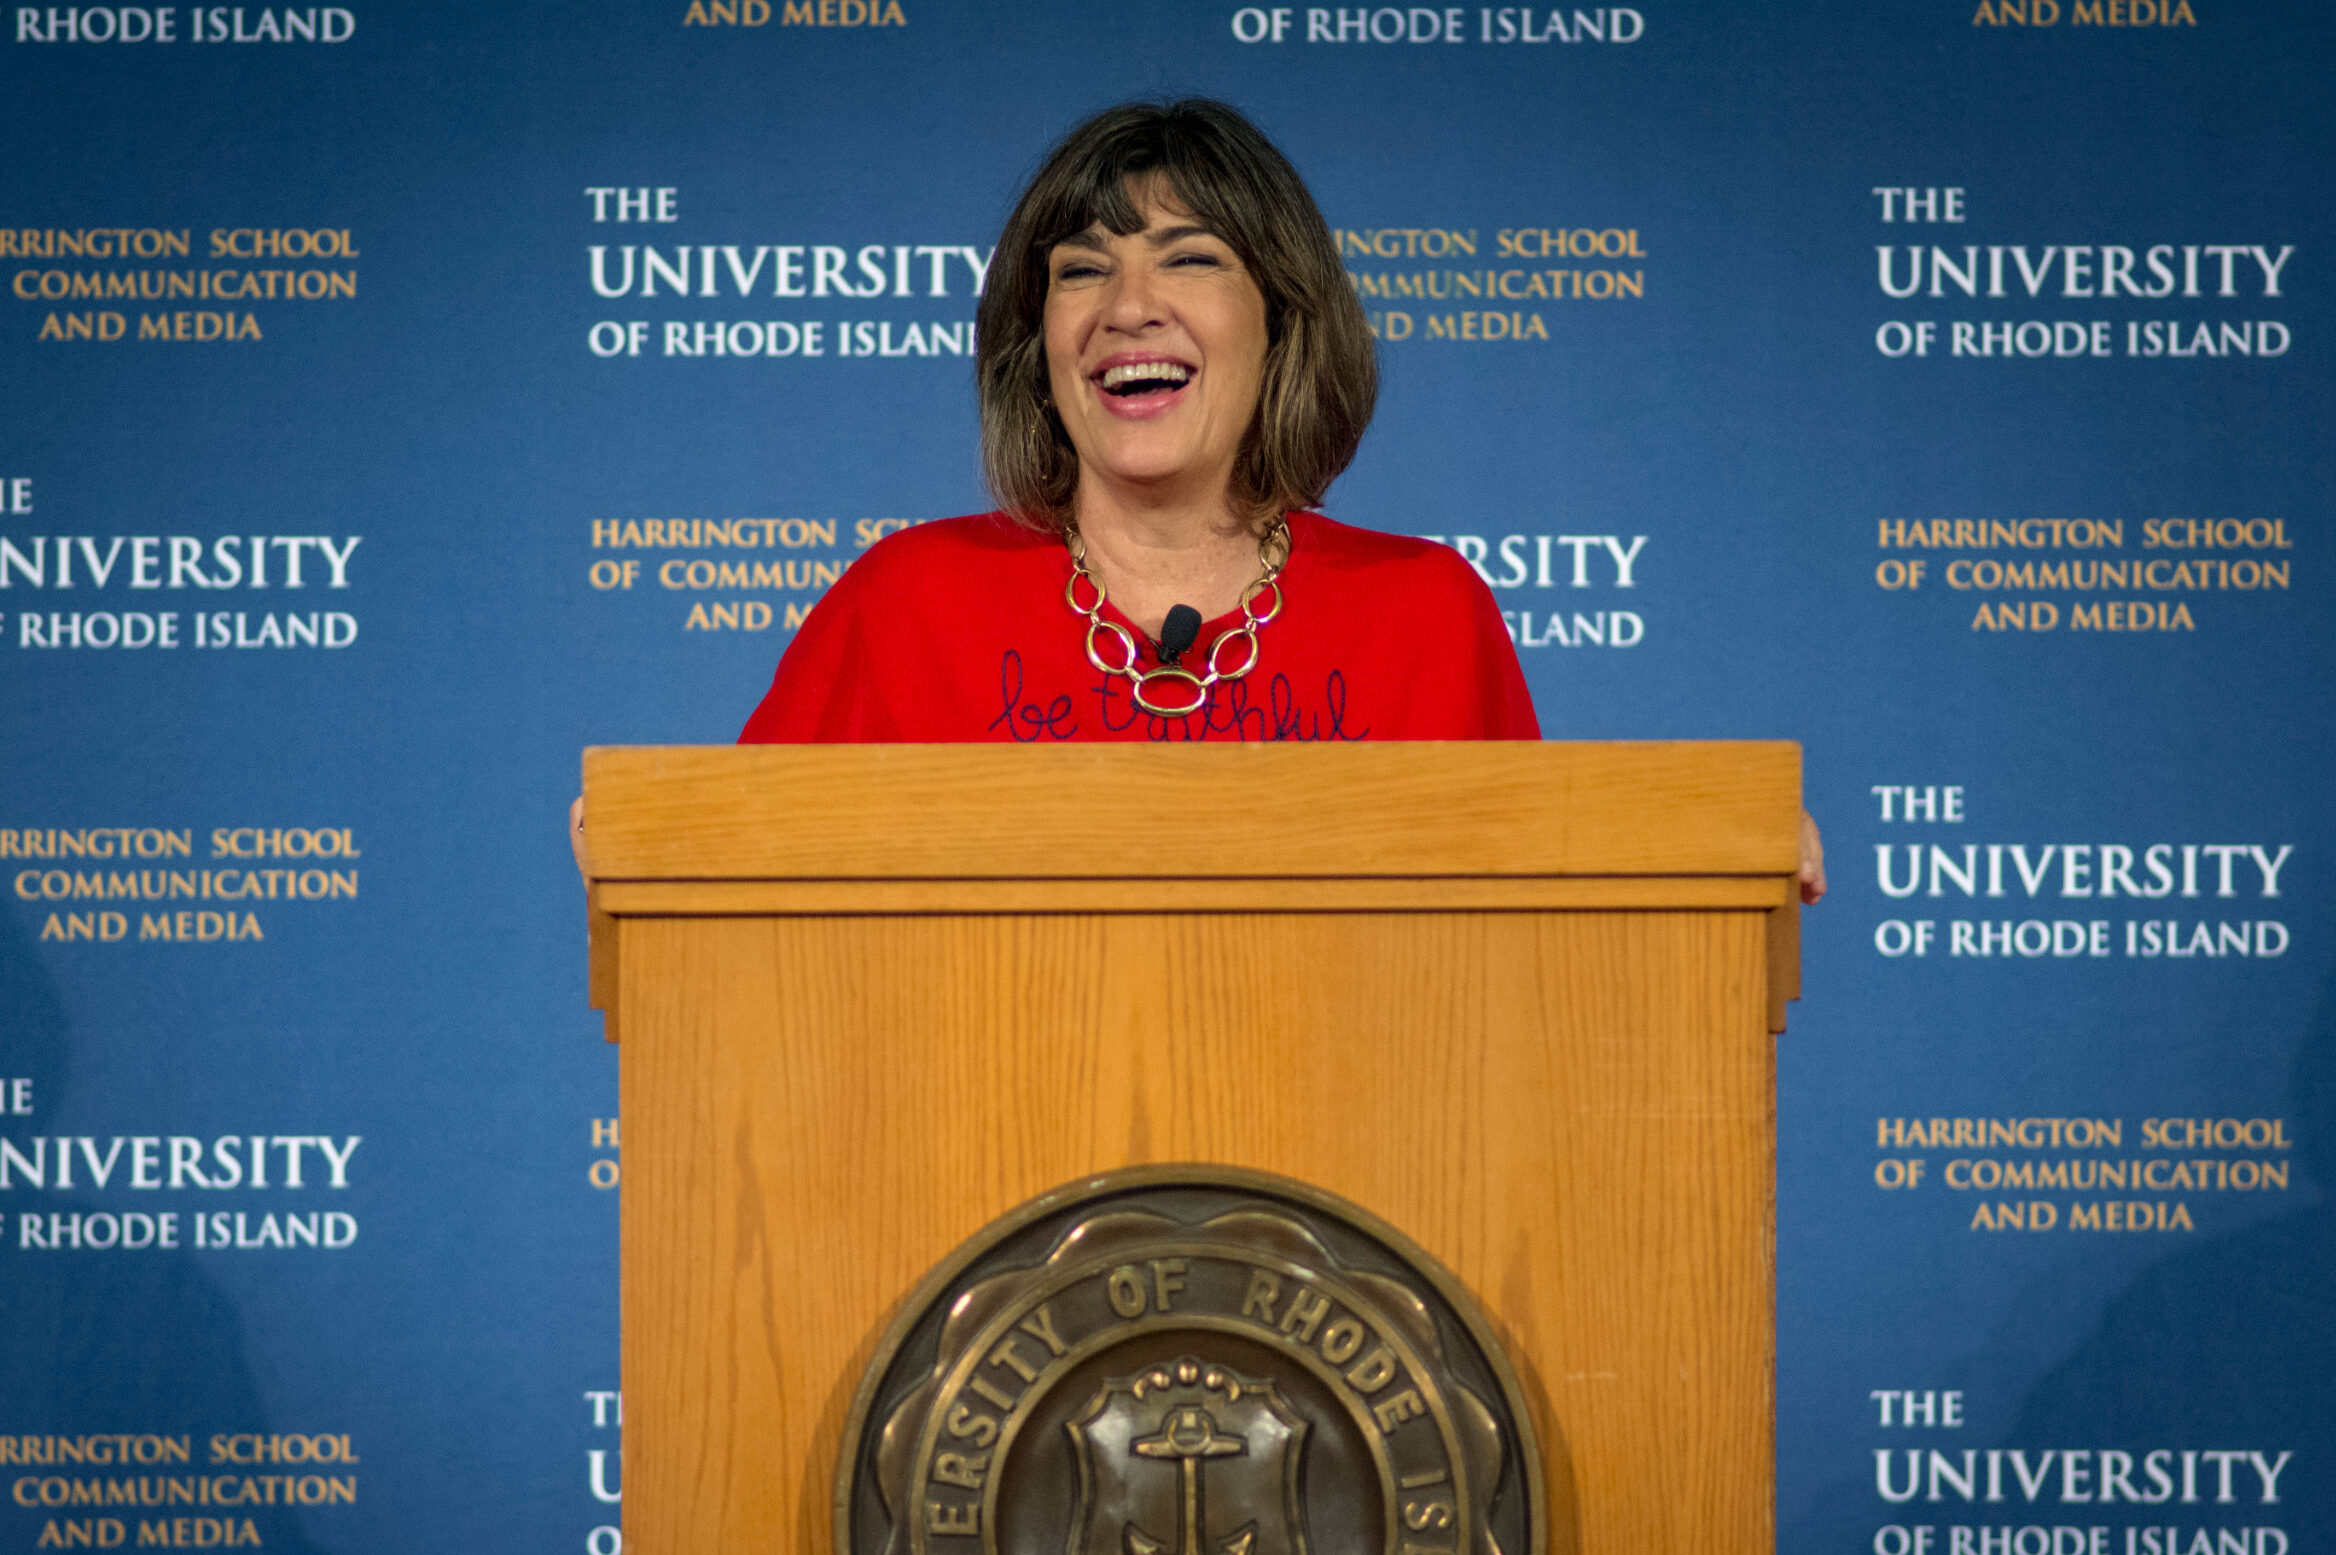 克里斯蒂安·阿曼普尔站在演讲台上笑着，背景是罗德岛大学的标志。